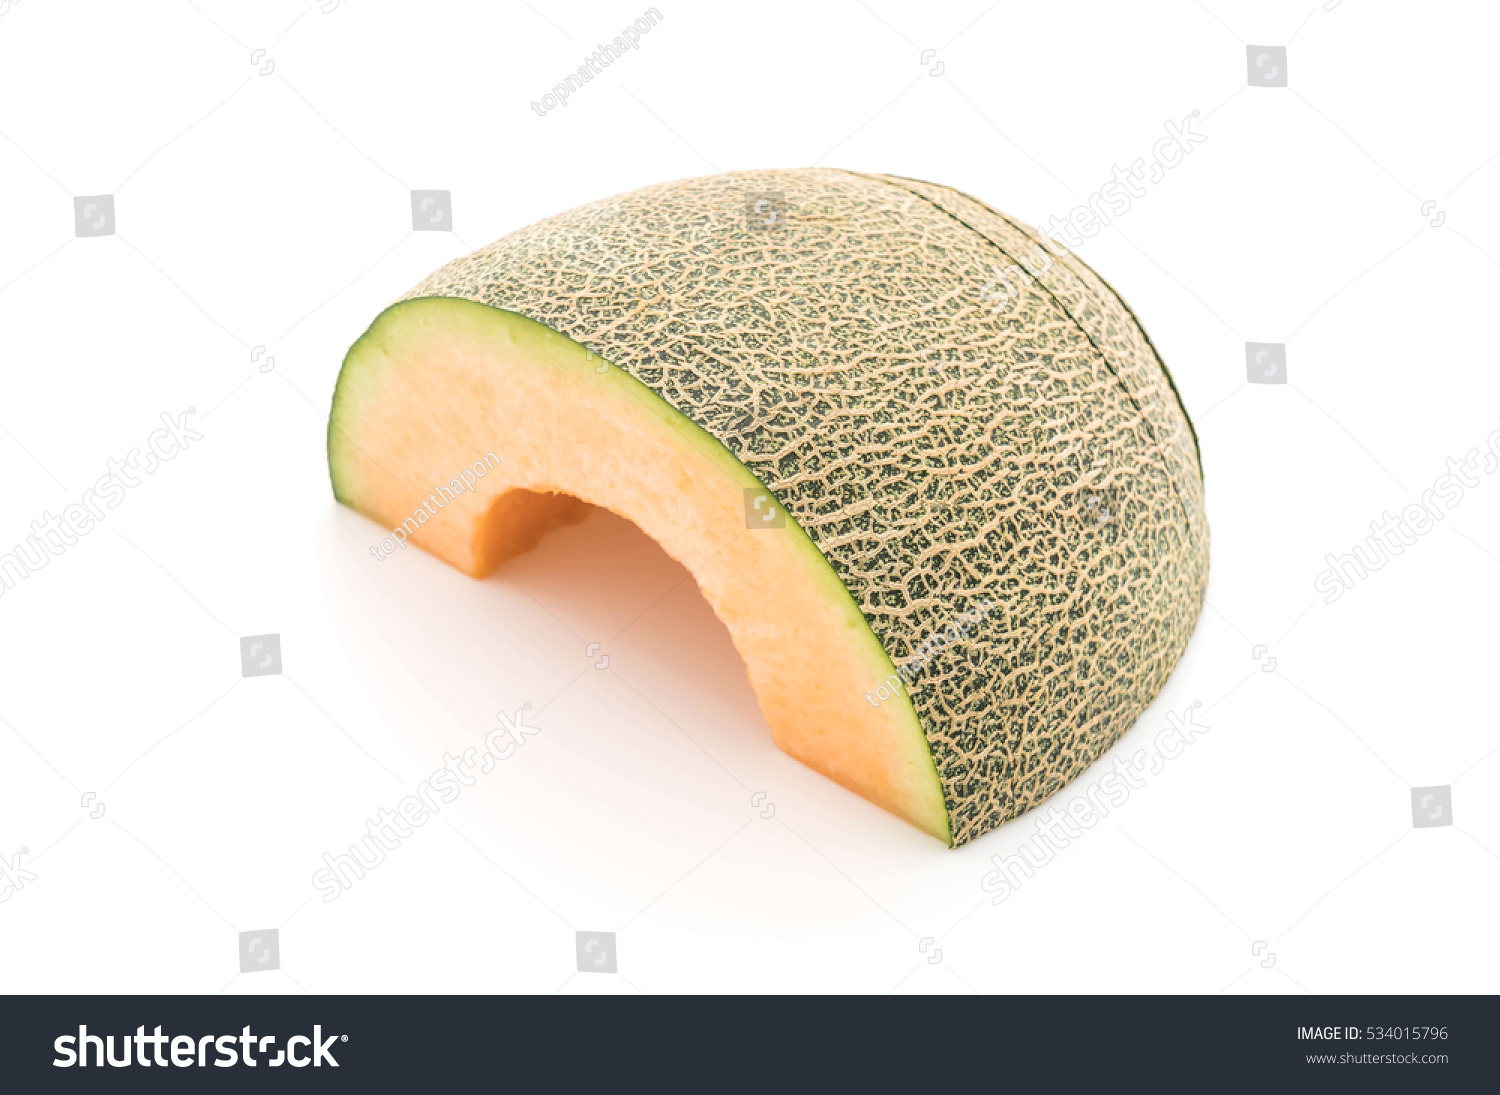 cantaloupe melon on white background #534015796